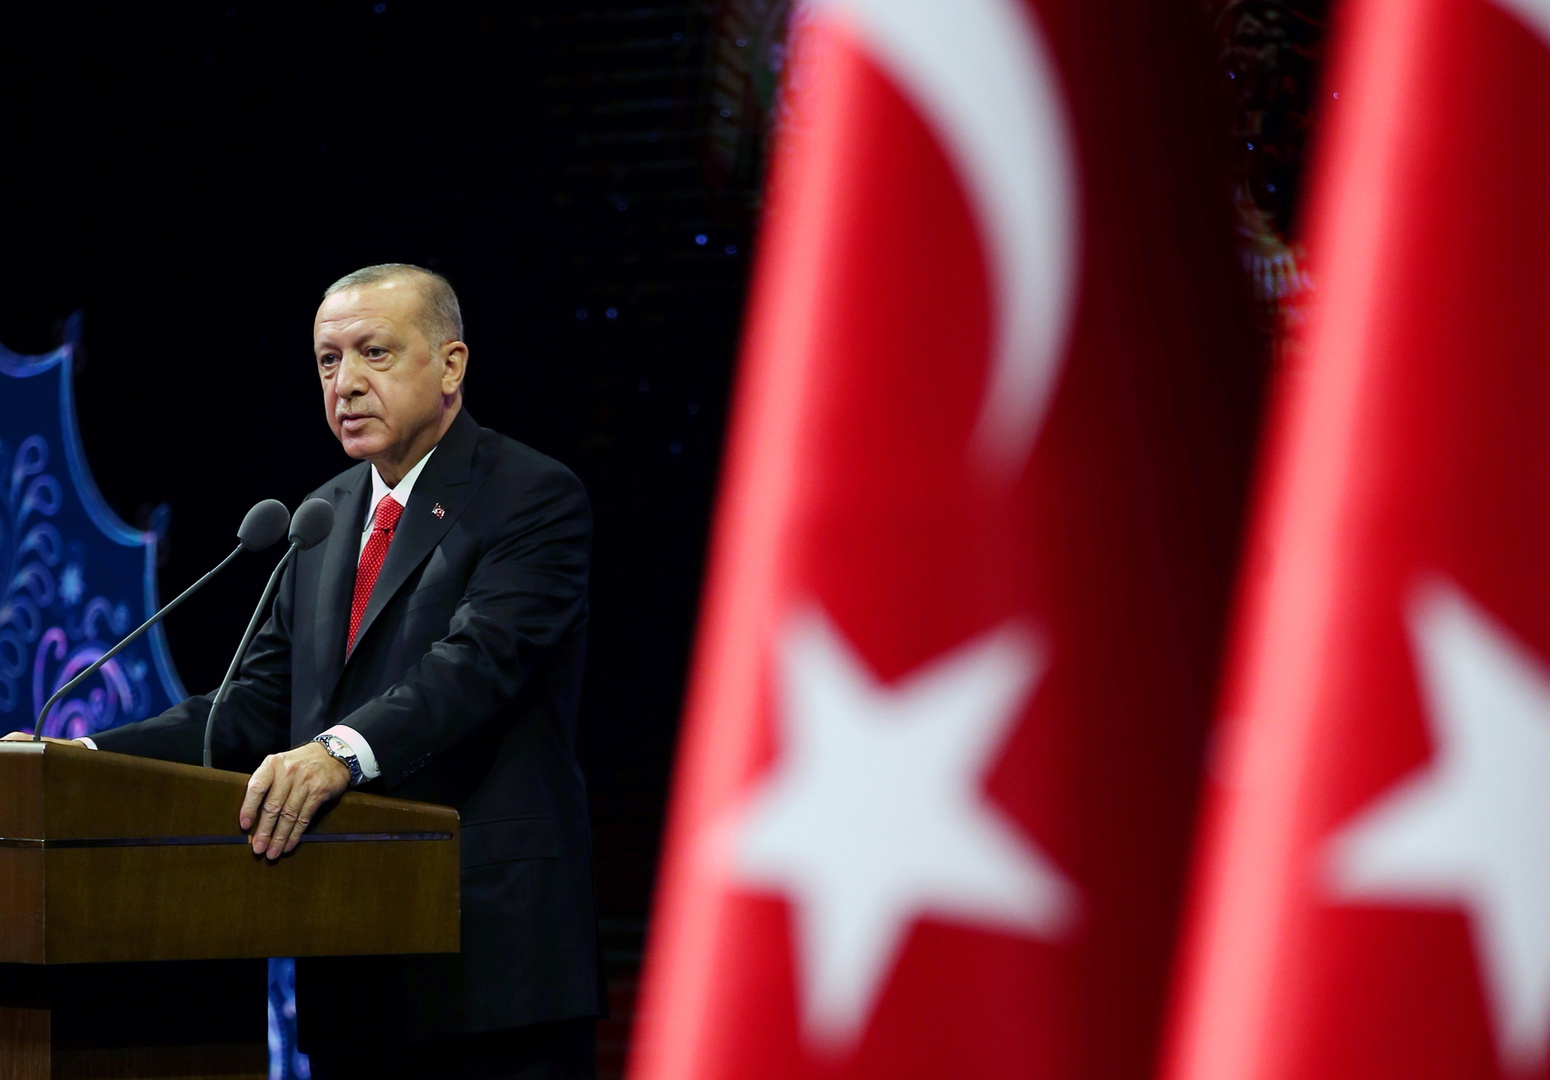 أردوغان: من سيحاول النيل من تركيا ينتظره مصير مؤلم بأيدي قواتها الخاصة